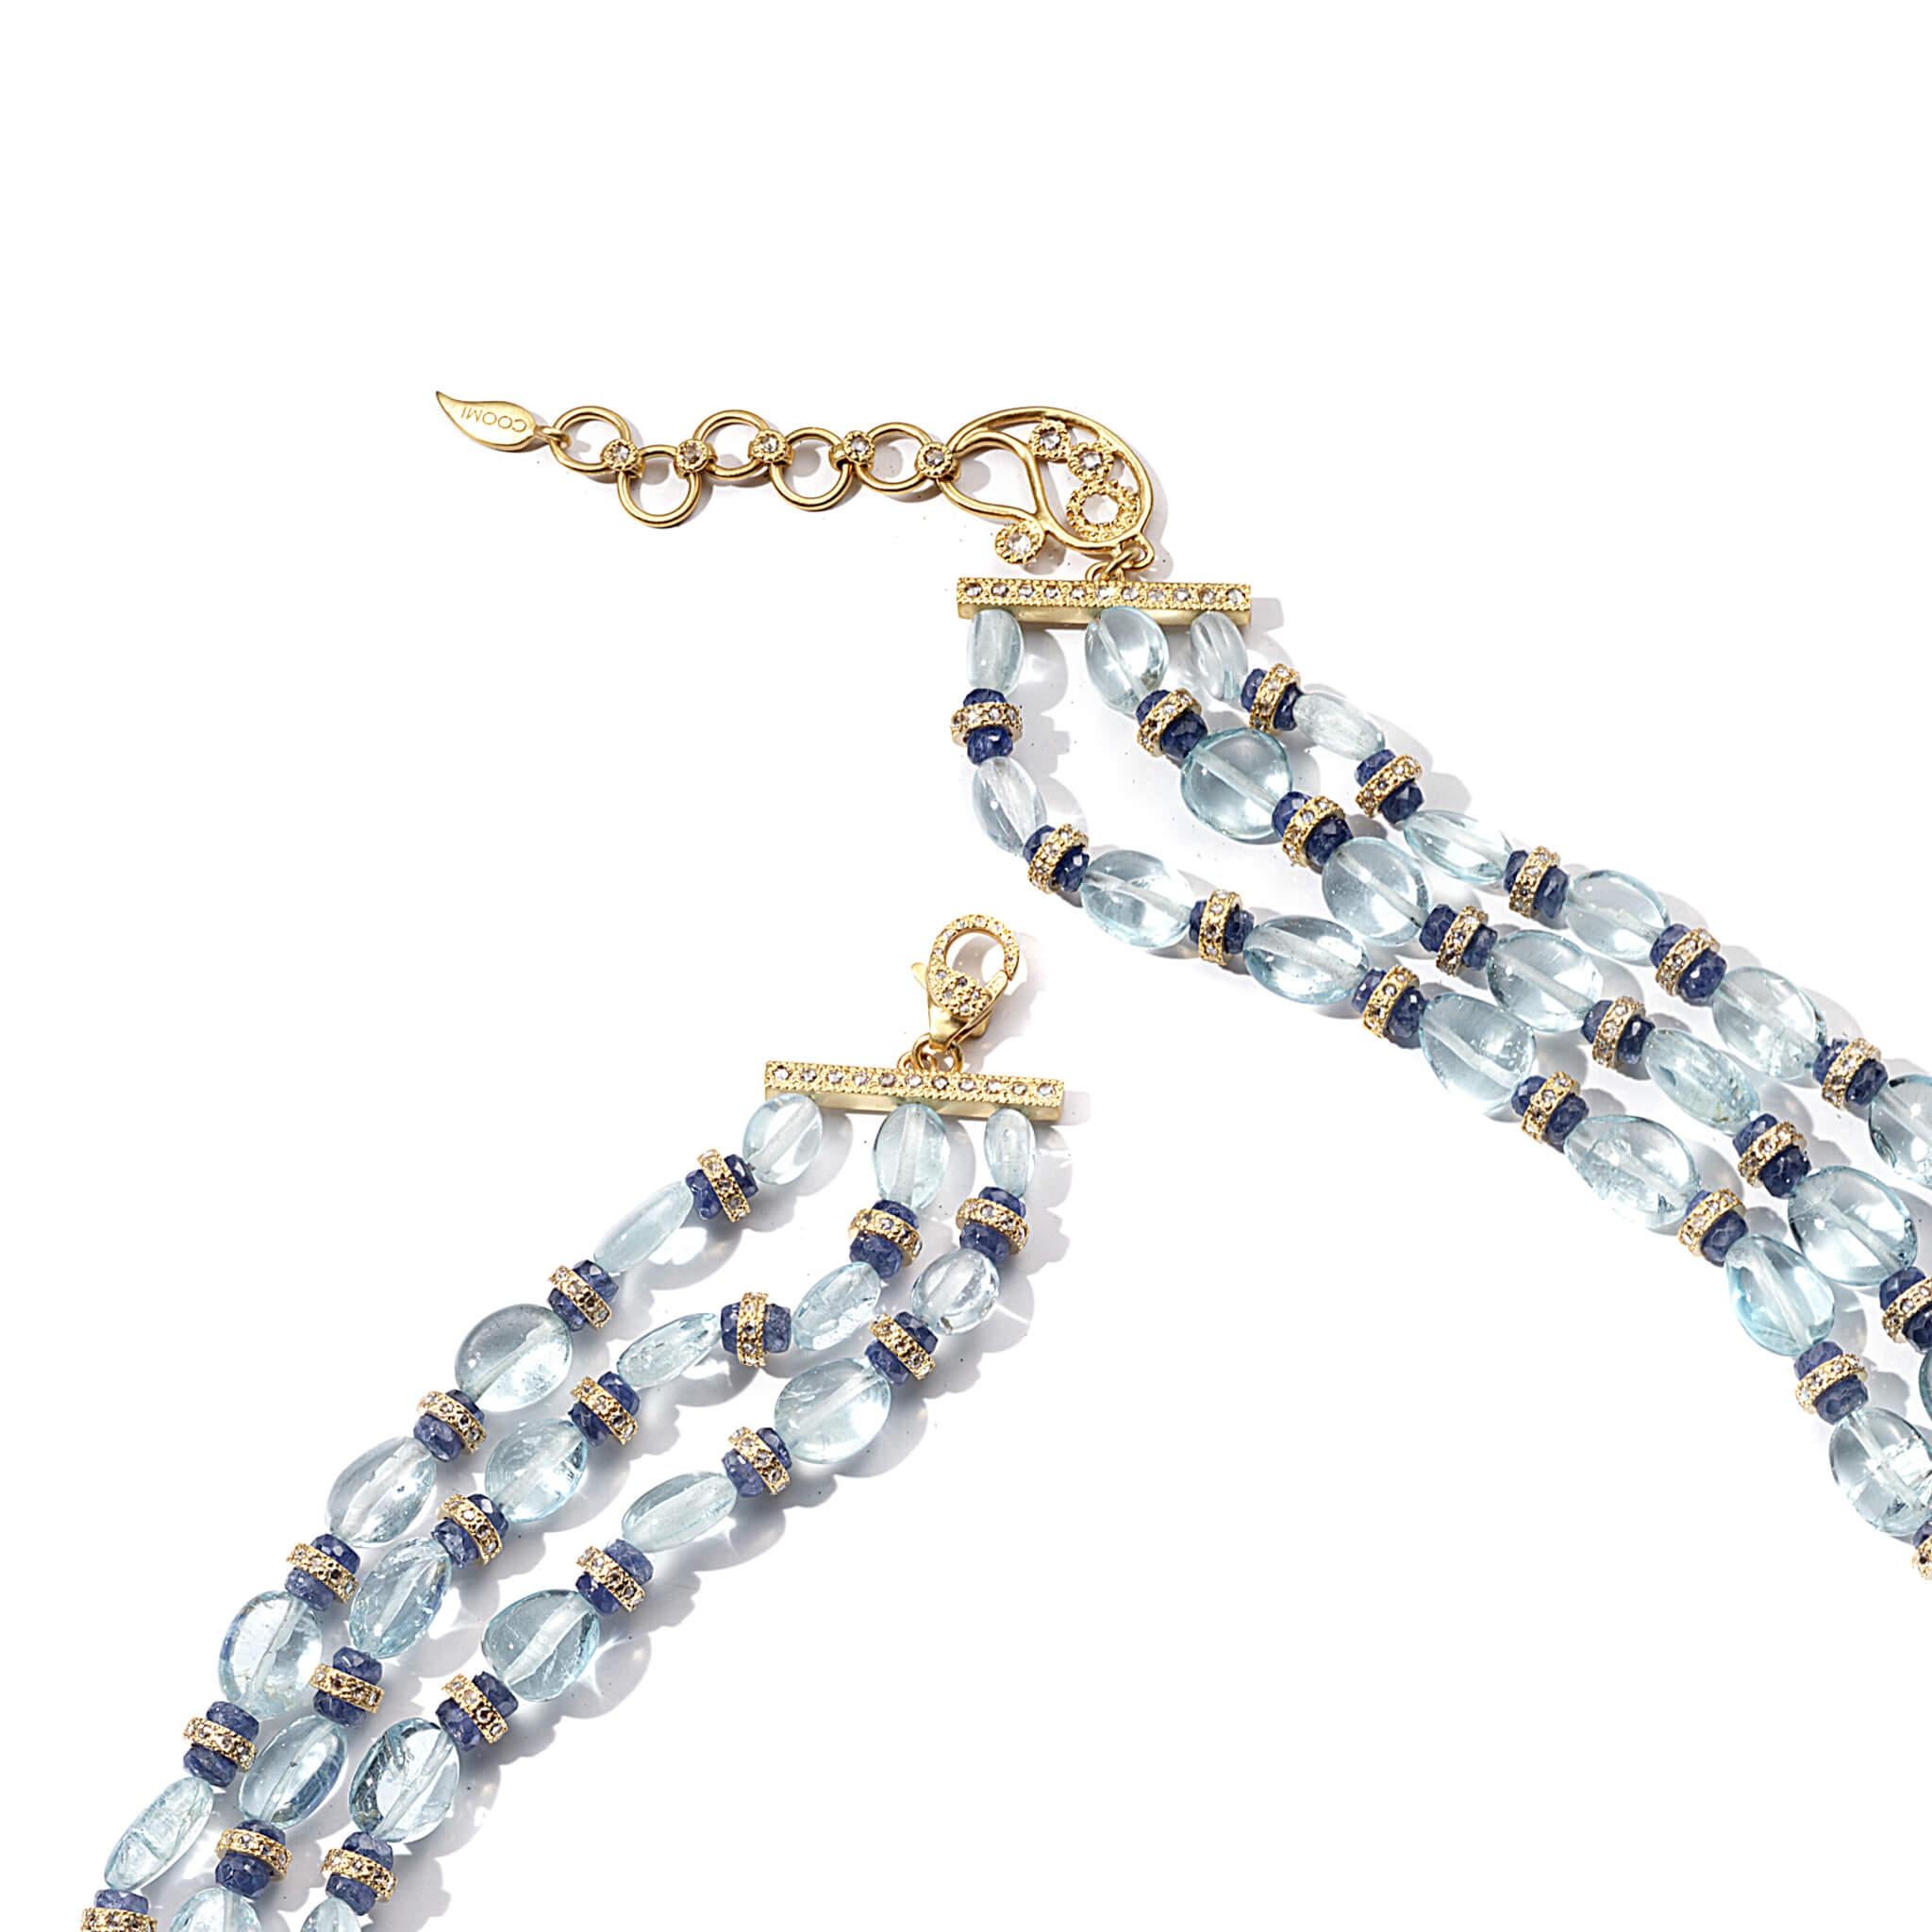 Affinity 16-Zoll-Halskette mit 4,84 CTS Diamanten, 244,08 CTS Aquamarin-Perlen und 38,72 CTS blauen Saphir-Perlen. In 20K Gold gefasst. Verlängerungsstück für eine längere Befestigung erhältlich.